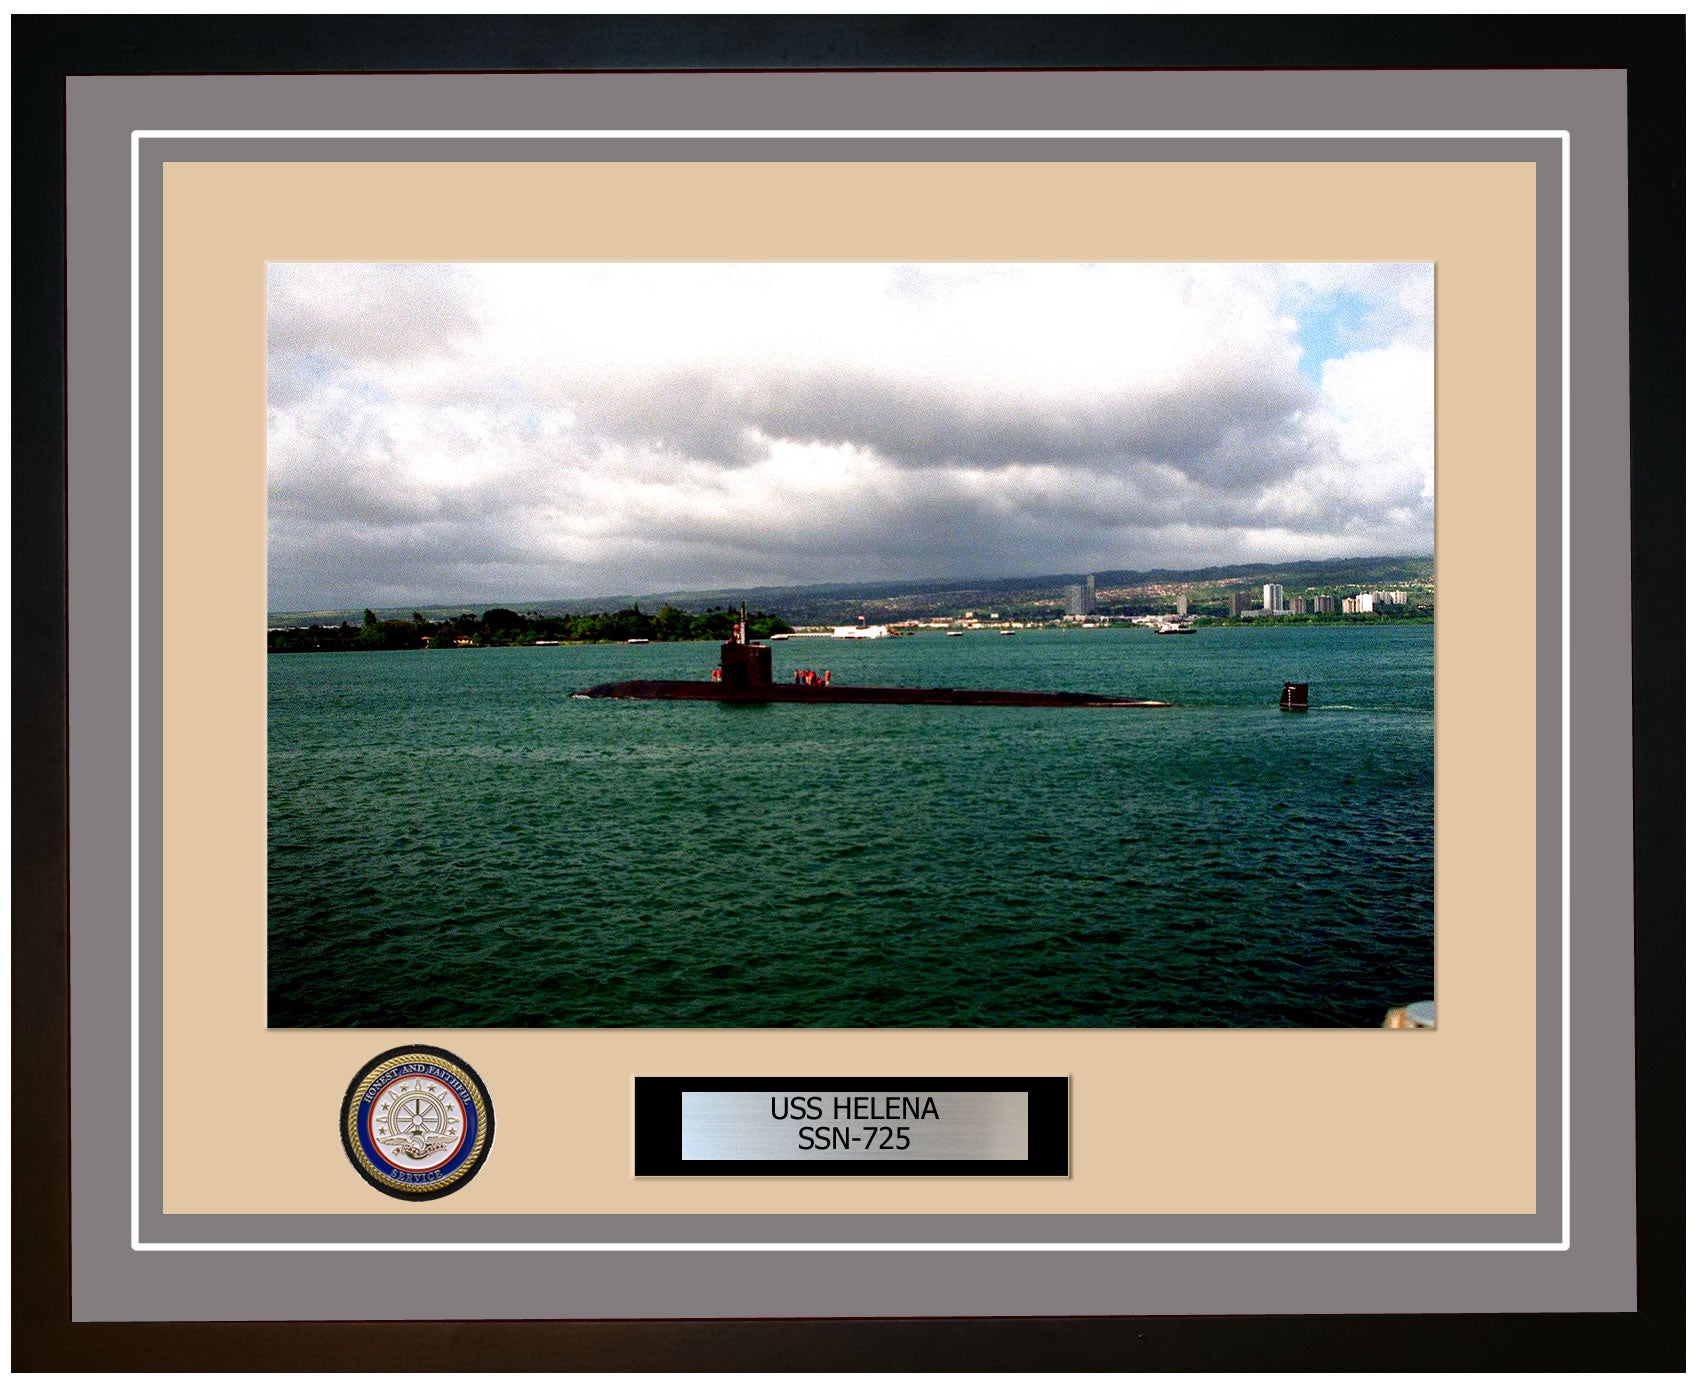 USS Helena SSN-725 Framed Navy Ship Photo Grey